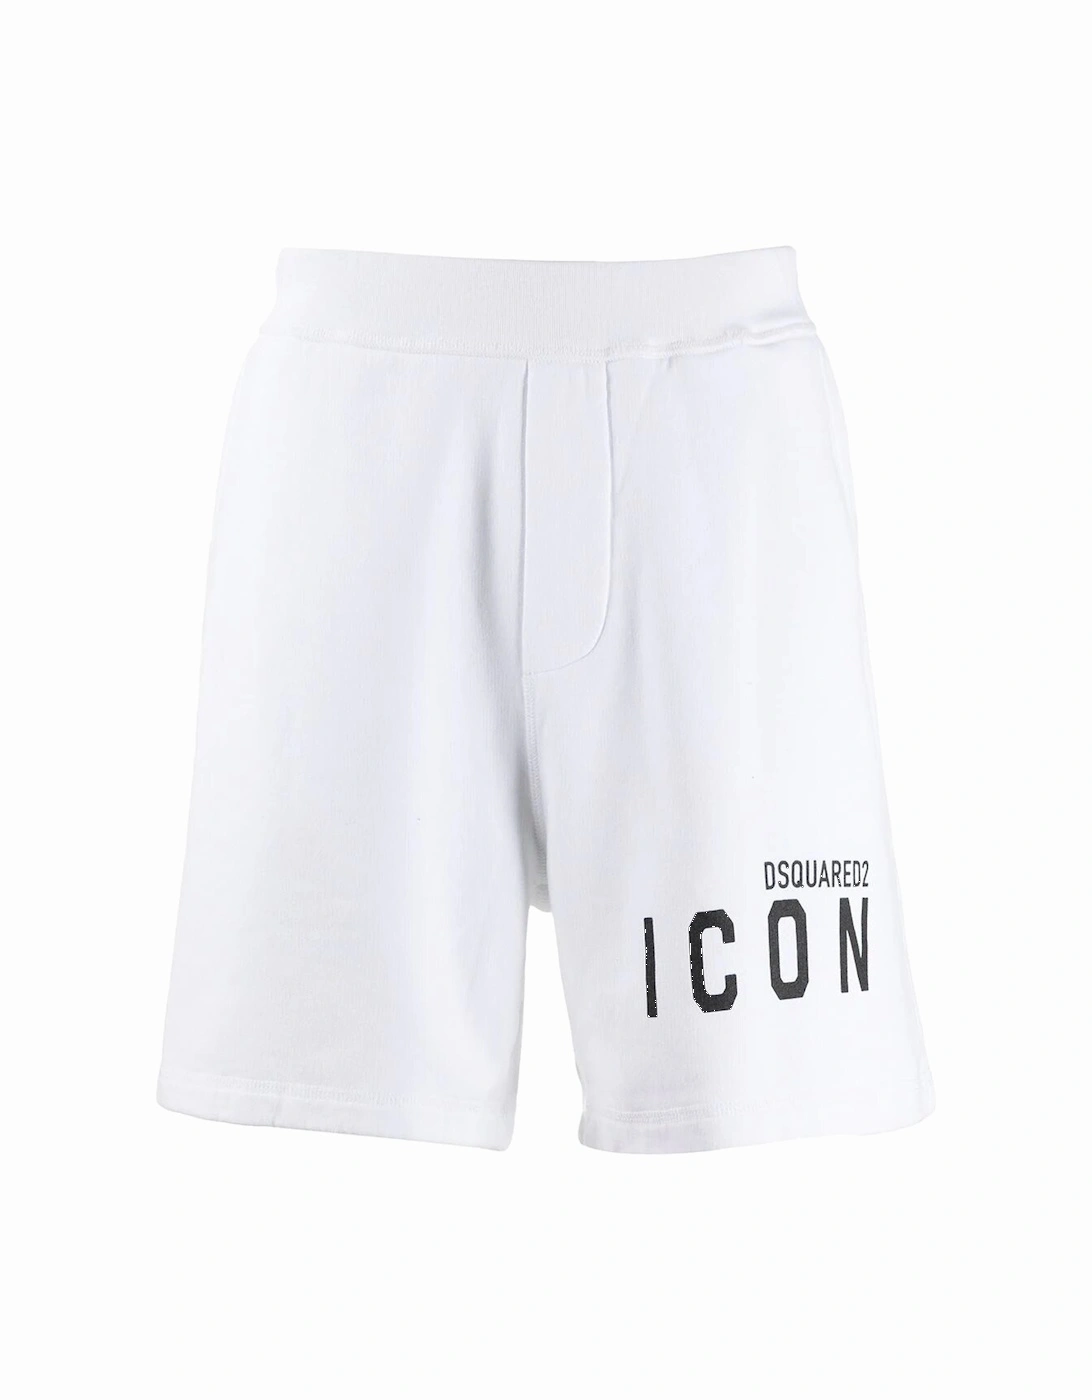 ICON Logo Print Shorts in White, 6 of 5